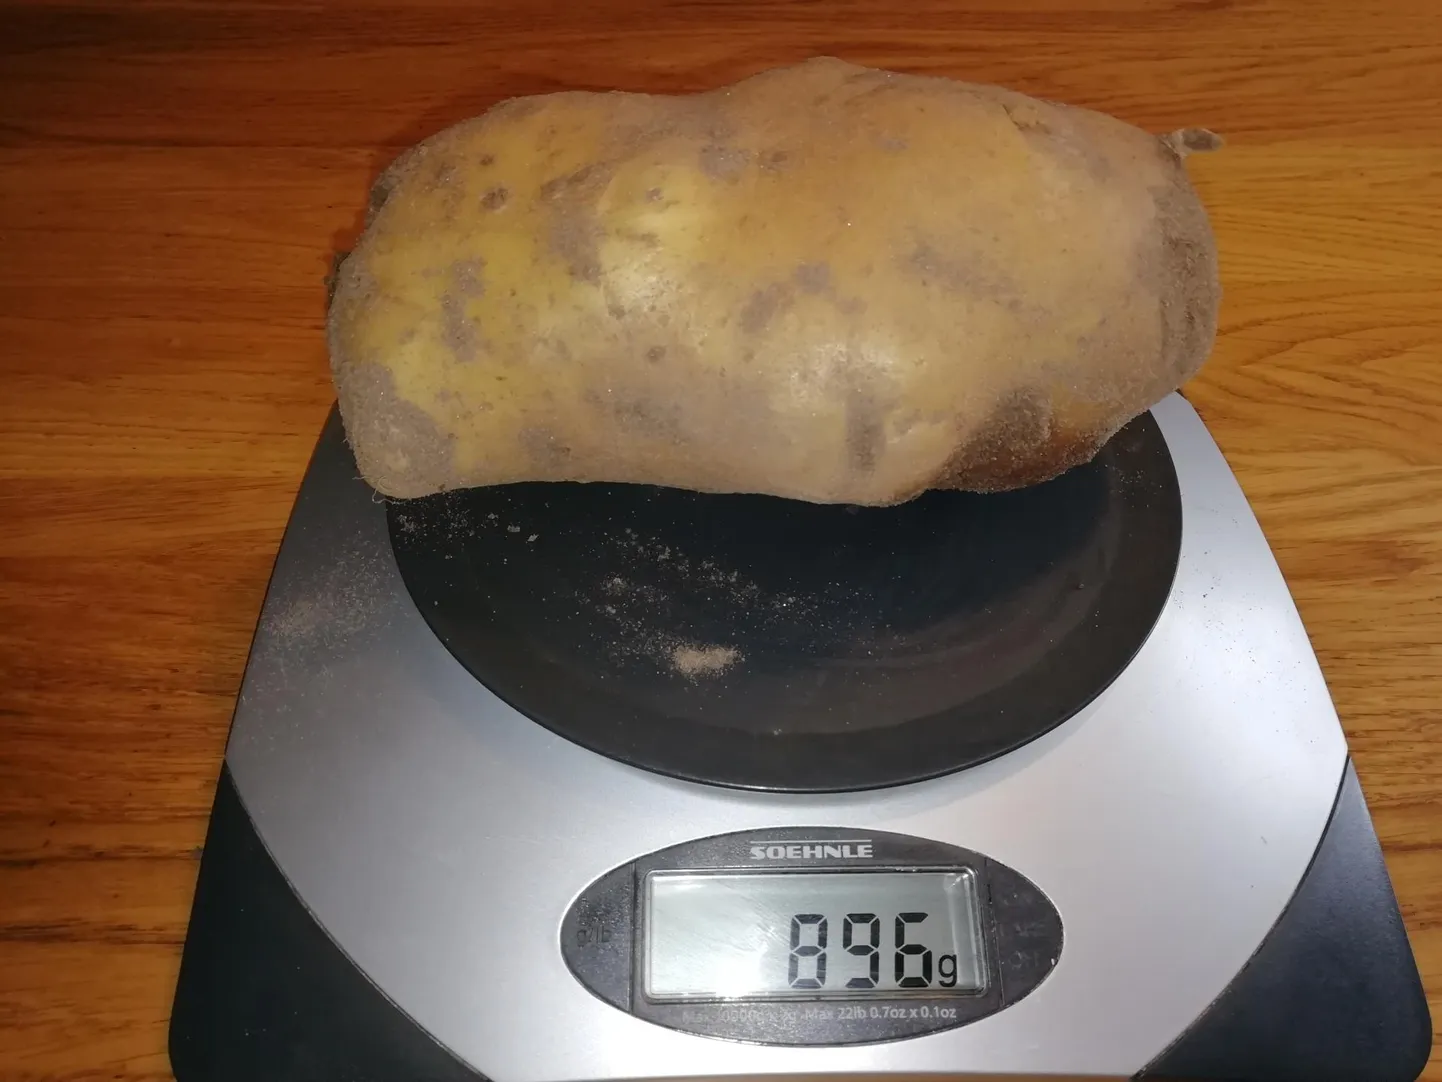 Heiki Leesiku kartul kaalus pea 900 grammi.